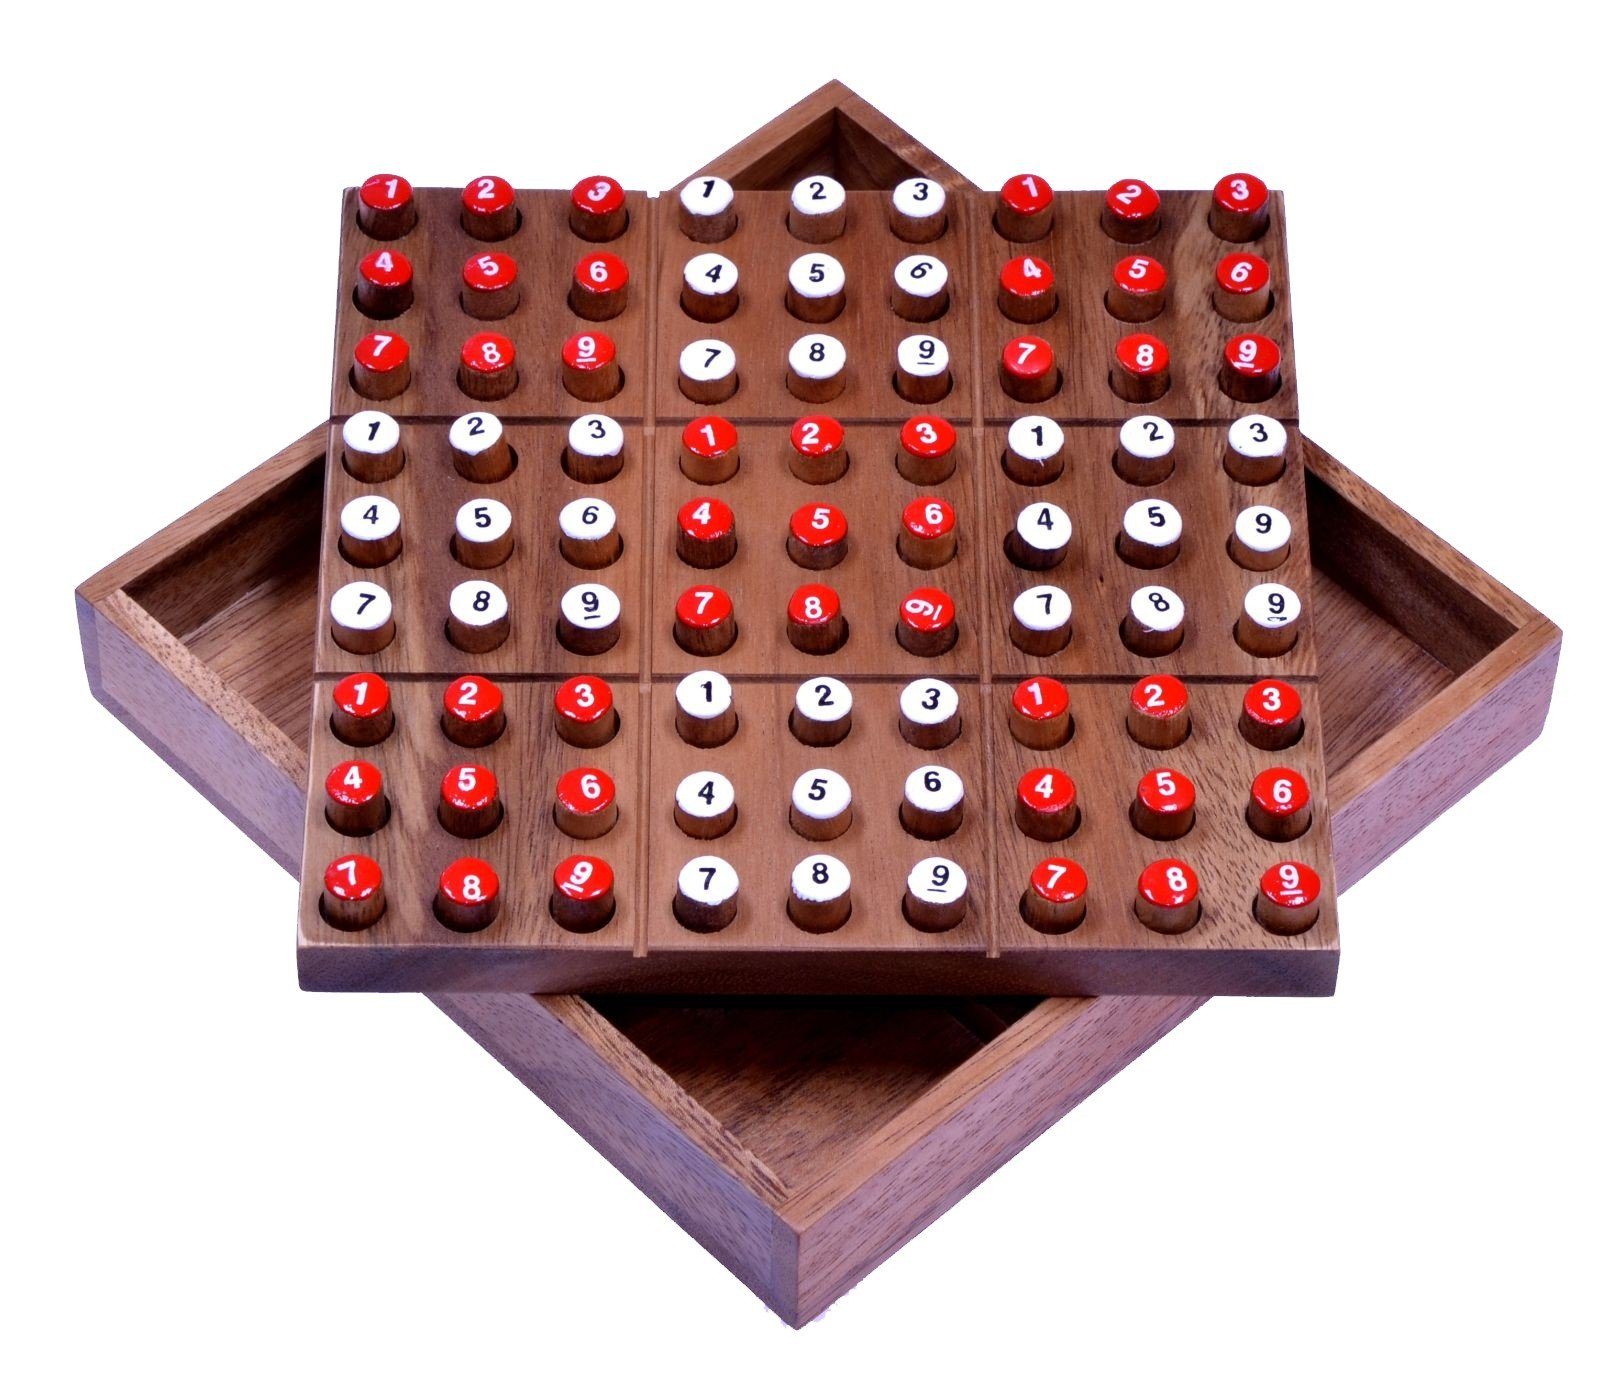 Logoplay Holzspiele Spiel, Sudoku mit Zahlensteckern - Spielfeld 18 x 18 cm - Steckspiel aus HolzHolzspielzeug | Spiele